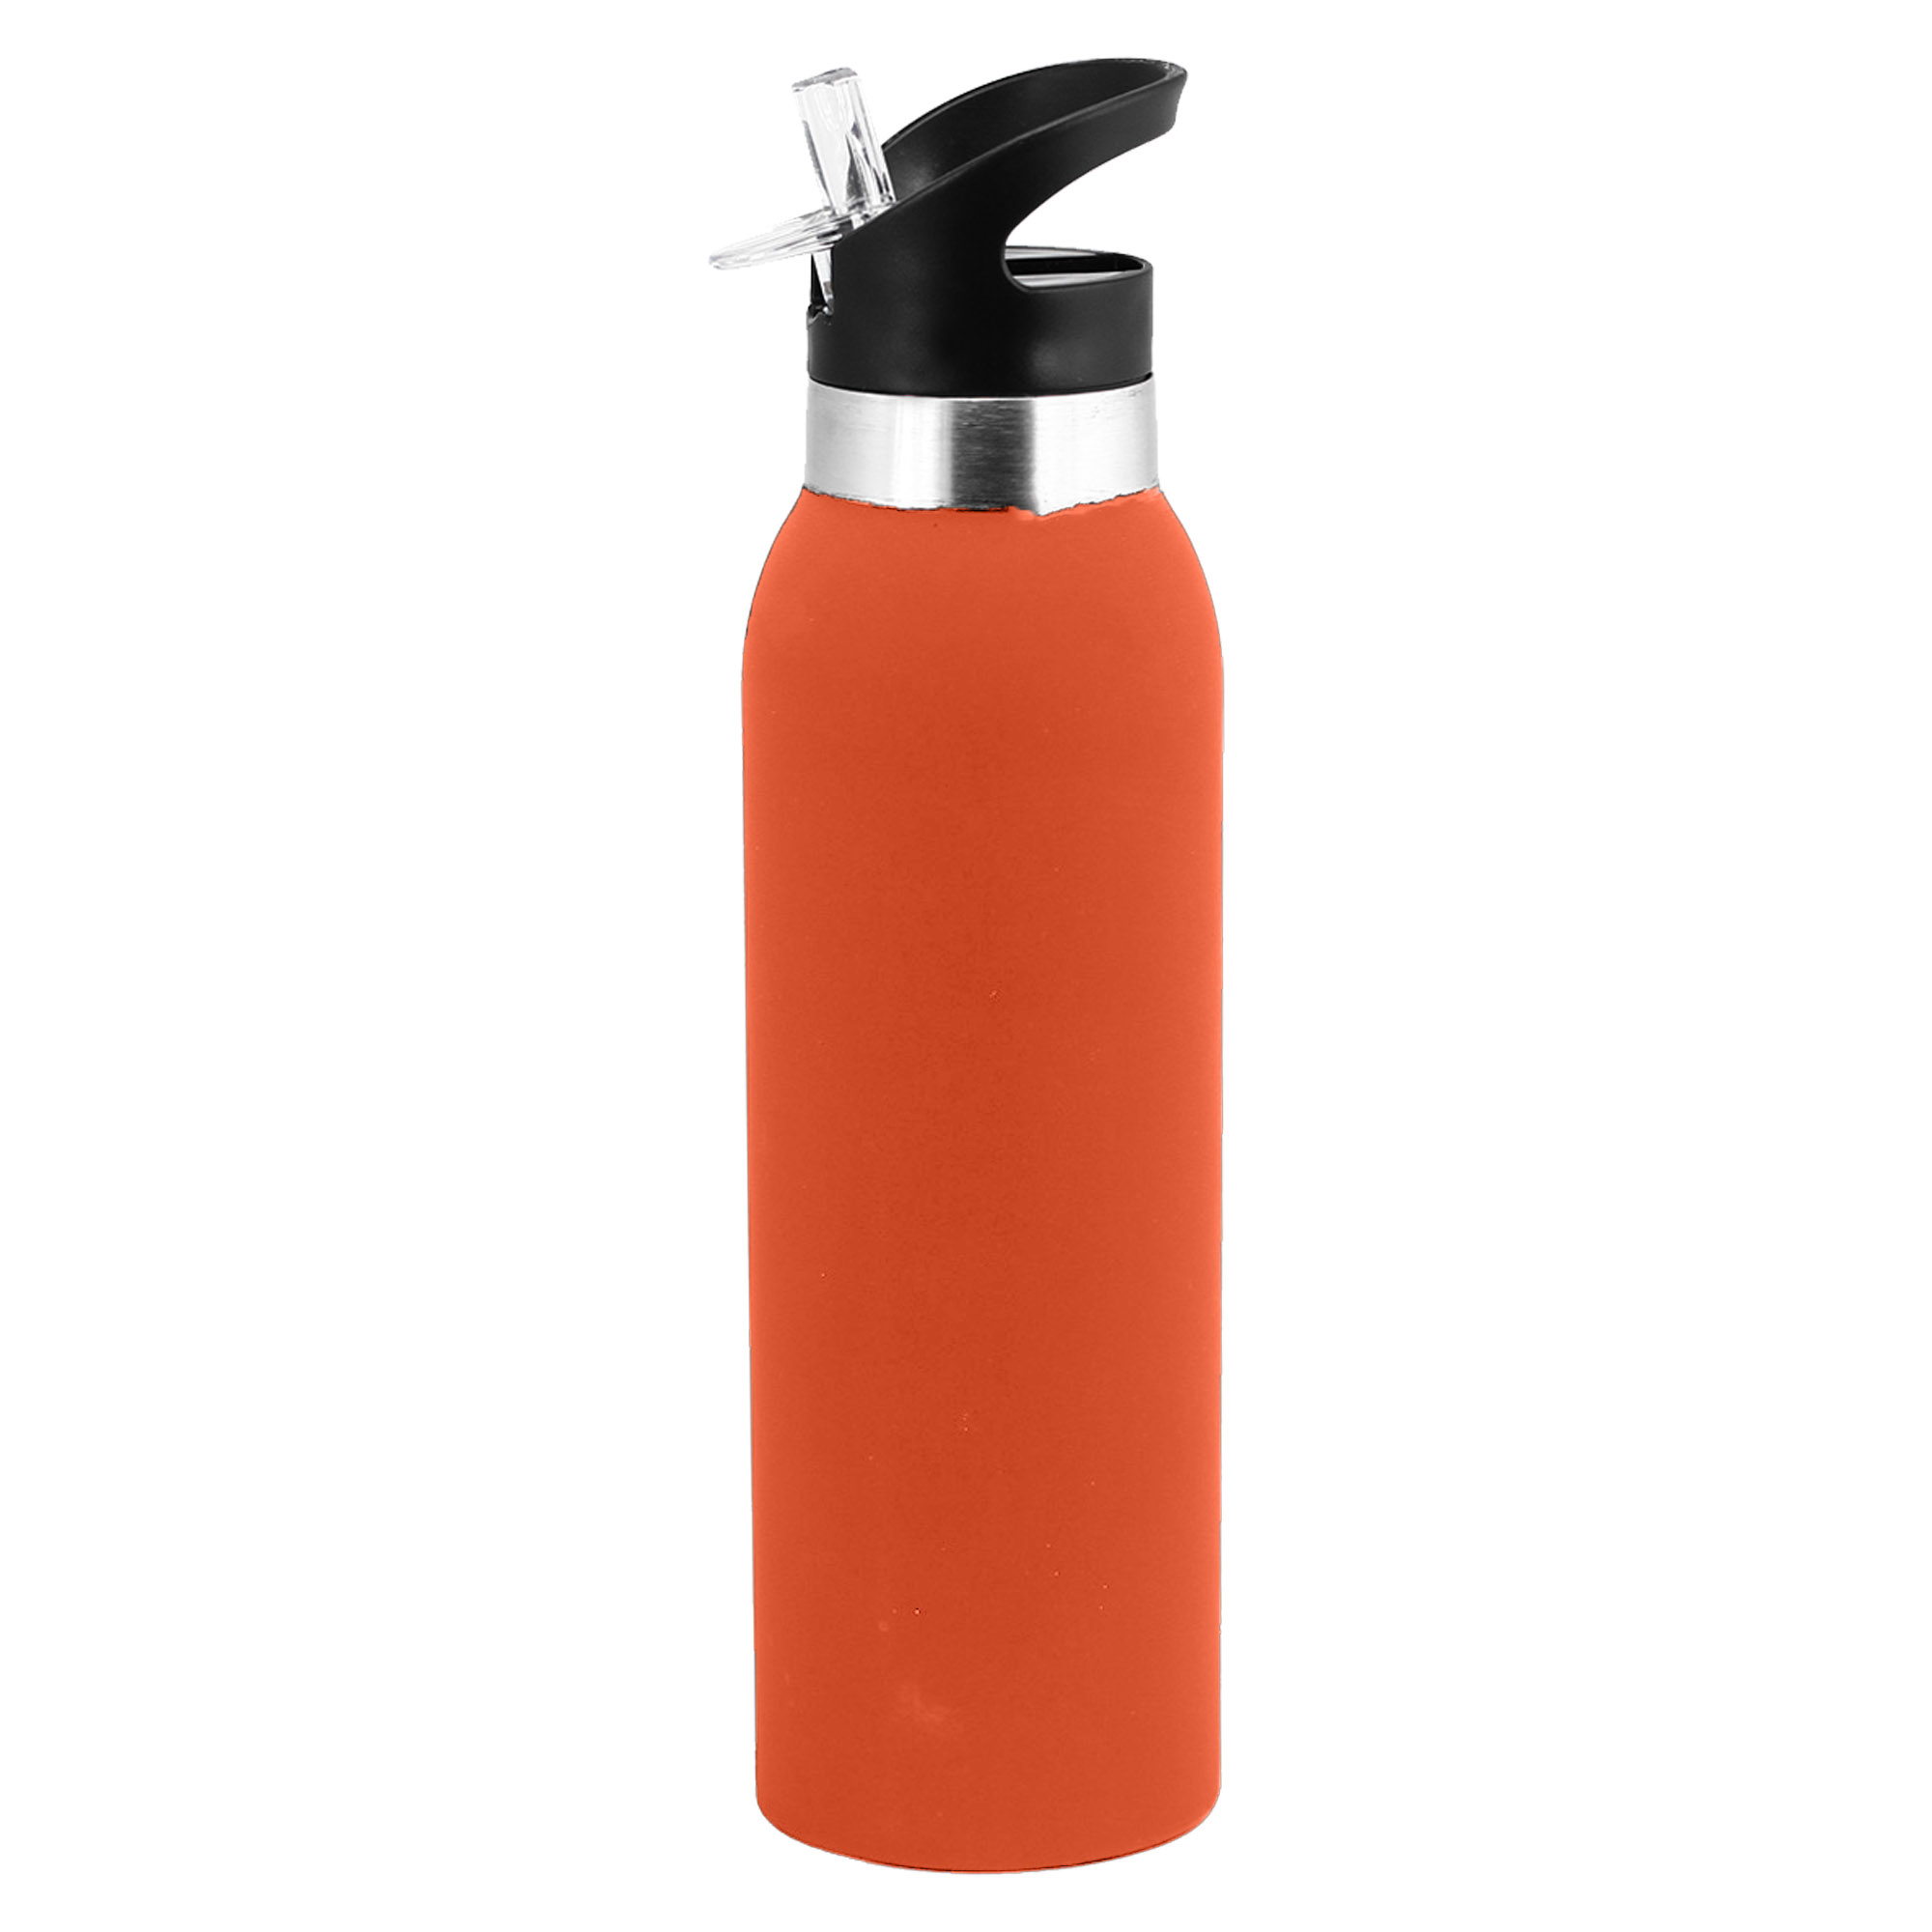 Bulk Custom Made Veola Orange Drink Bottle Online in Perth Australia